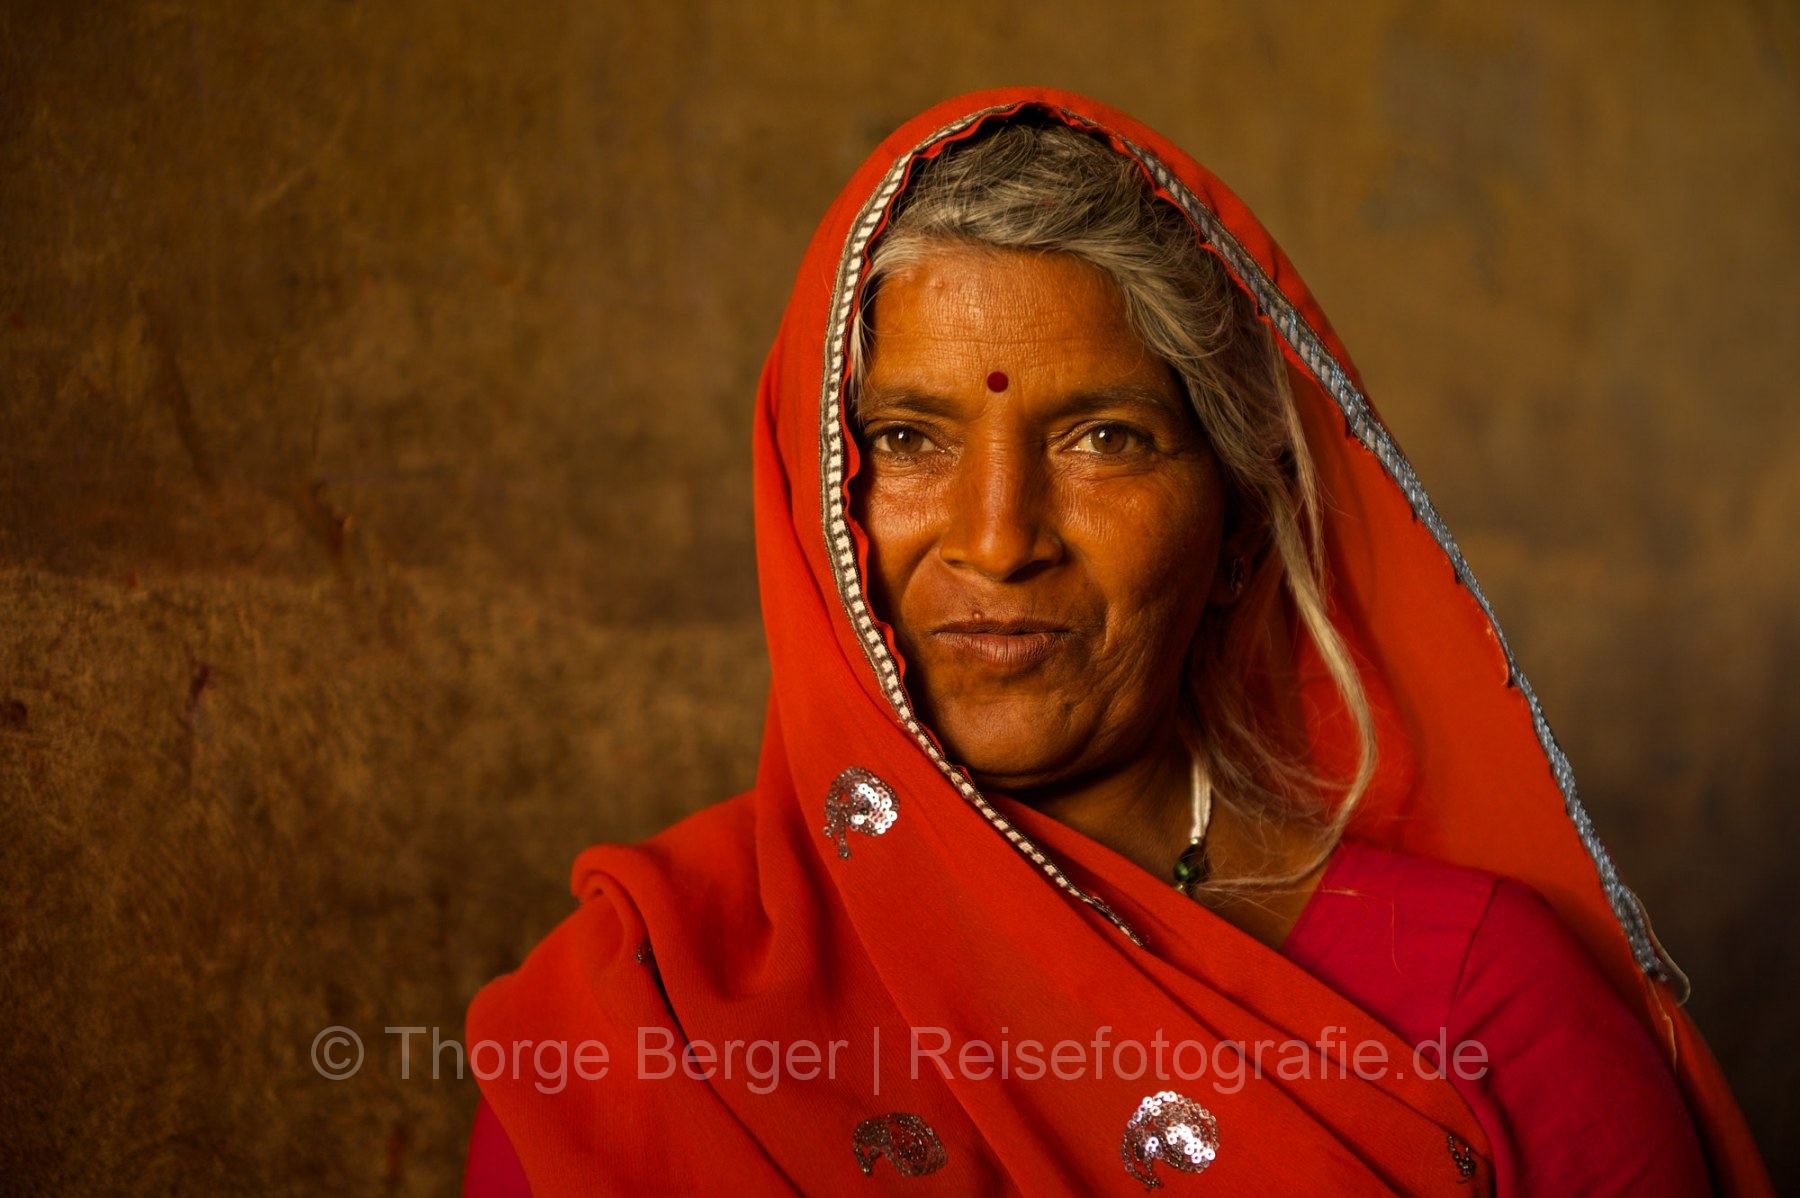 Woman in red sari - Jaipur